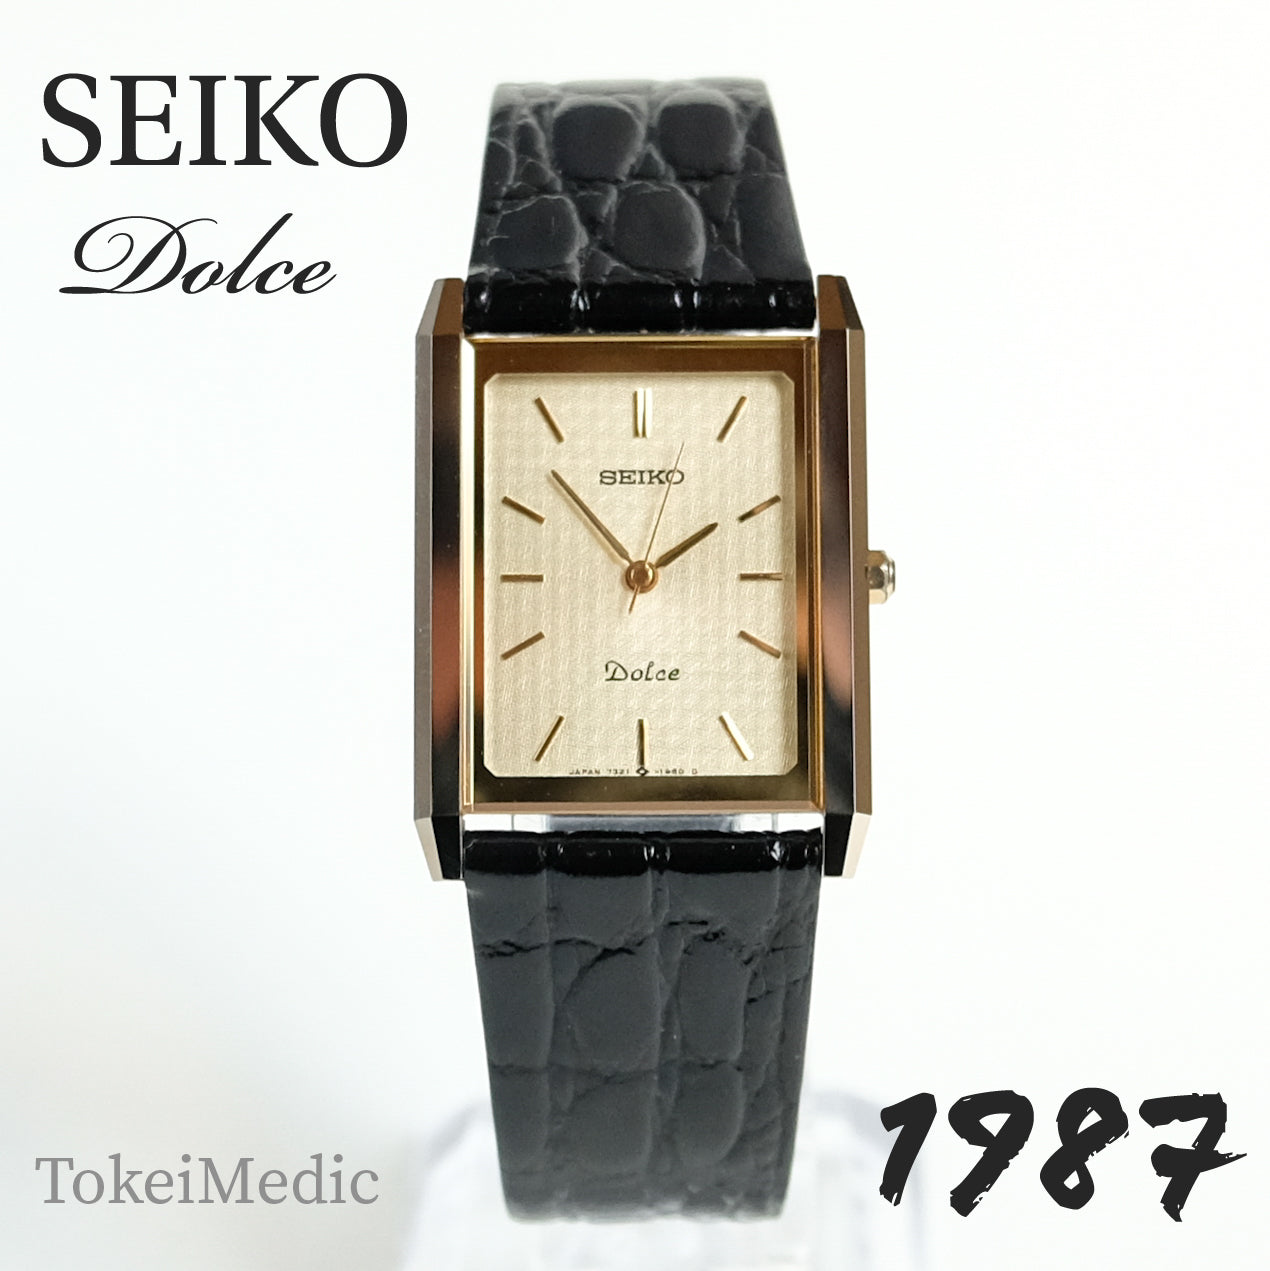 1987 Seiko Dolce 7321-6170